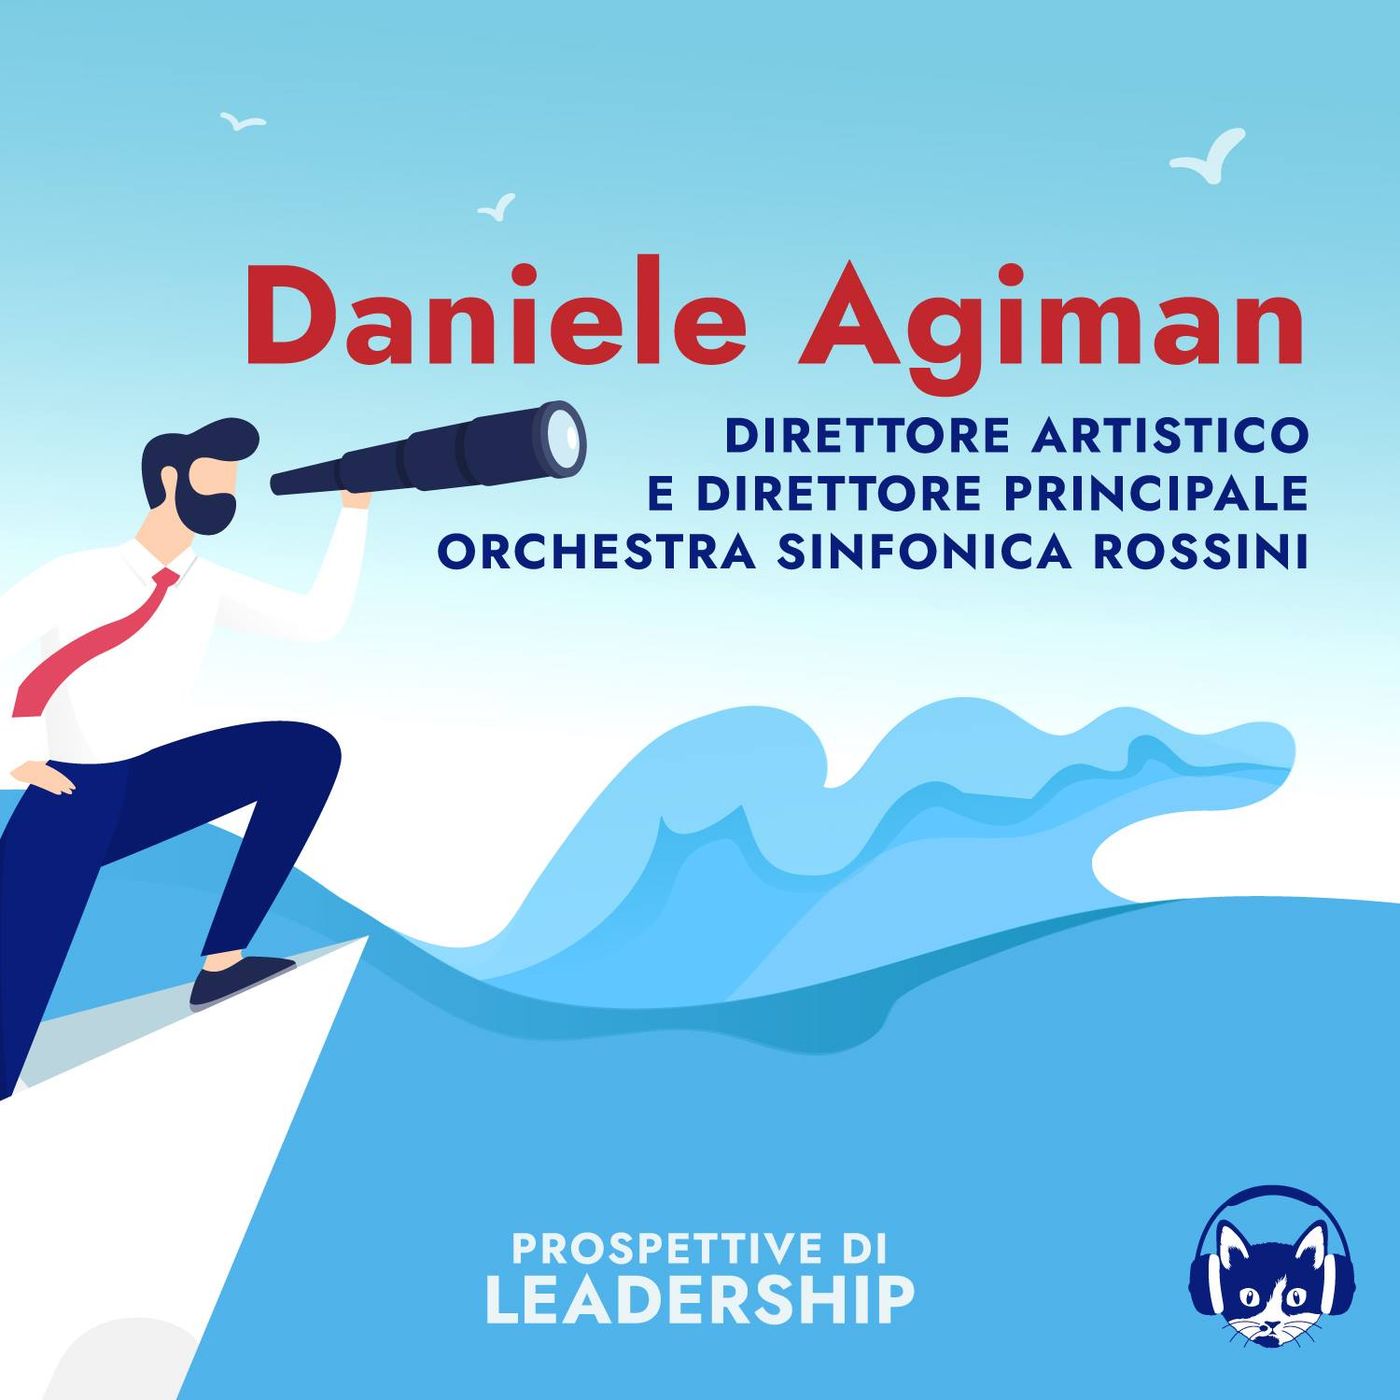 05. Daniele Agiman, Direttore Artistico e Direttore principale Orchestra Sinfonica Rossini